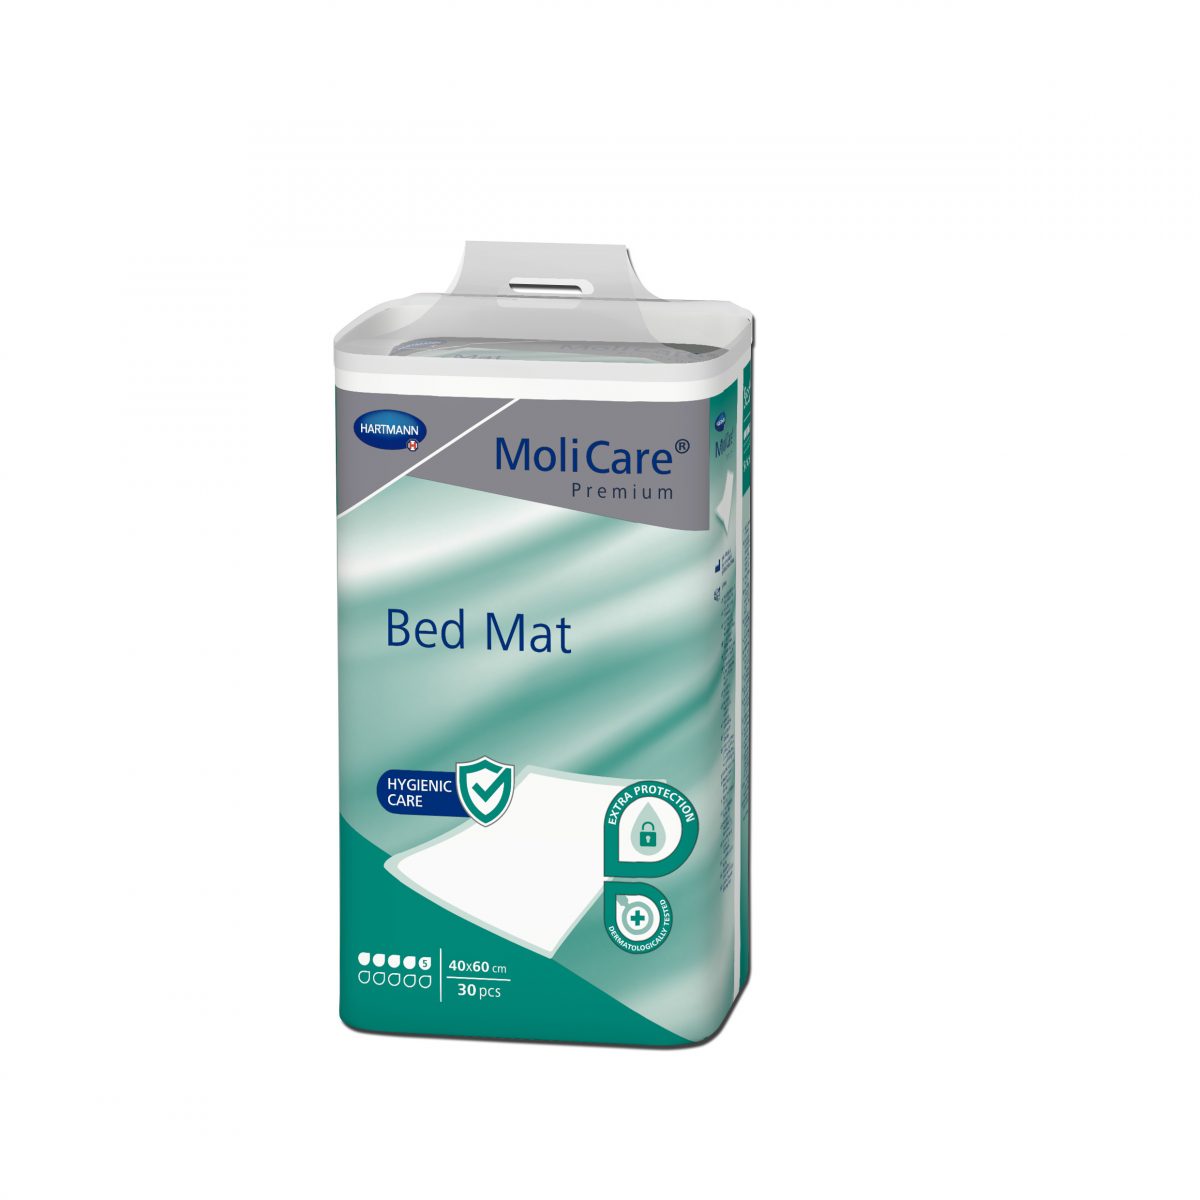 Paturele absorbante pentru protectia asternuturilor Hartmann MoliCare Premium Bed Mat 5 picaturi 40x60cm, 30 buc